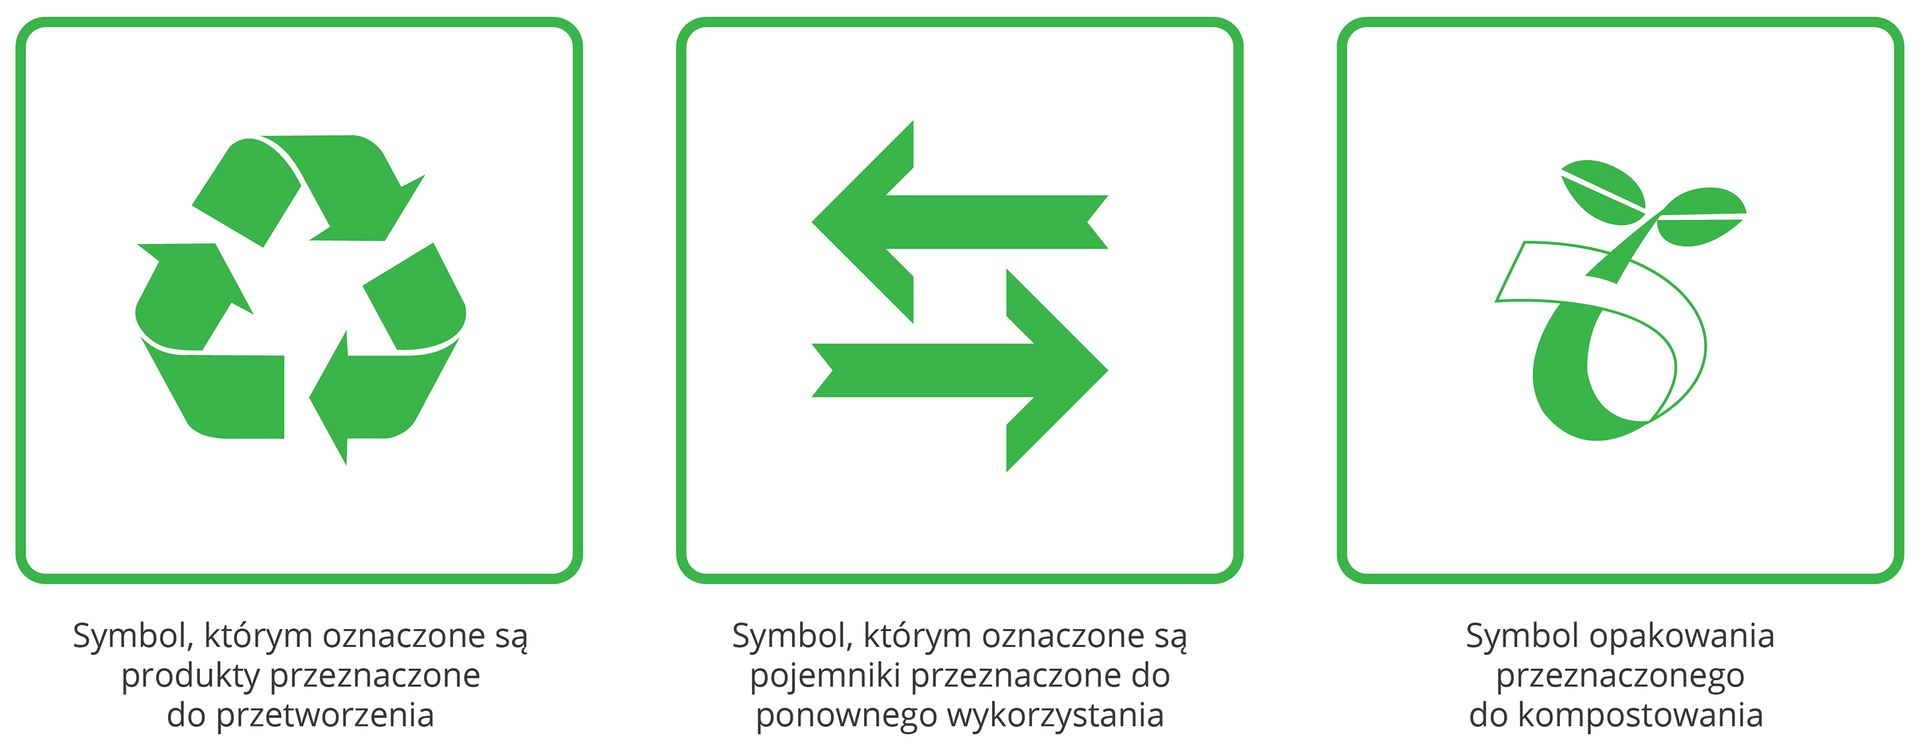 Znak 1.: zielone strzałki ułożone w trójkąt - znak produktów przeznaczonych do ponownego przetworzenia; znak 2. 2 zielone strzałki skierowane w prawo i lewo - oznaczenie pojemników do ponownego wykorzystania; znak 3: symbolicznie przedstawiona roślina - oznaczenie produktów do kompostowania.